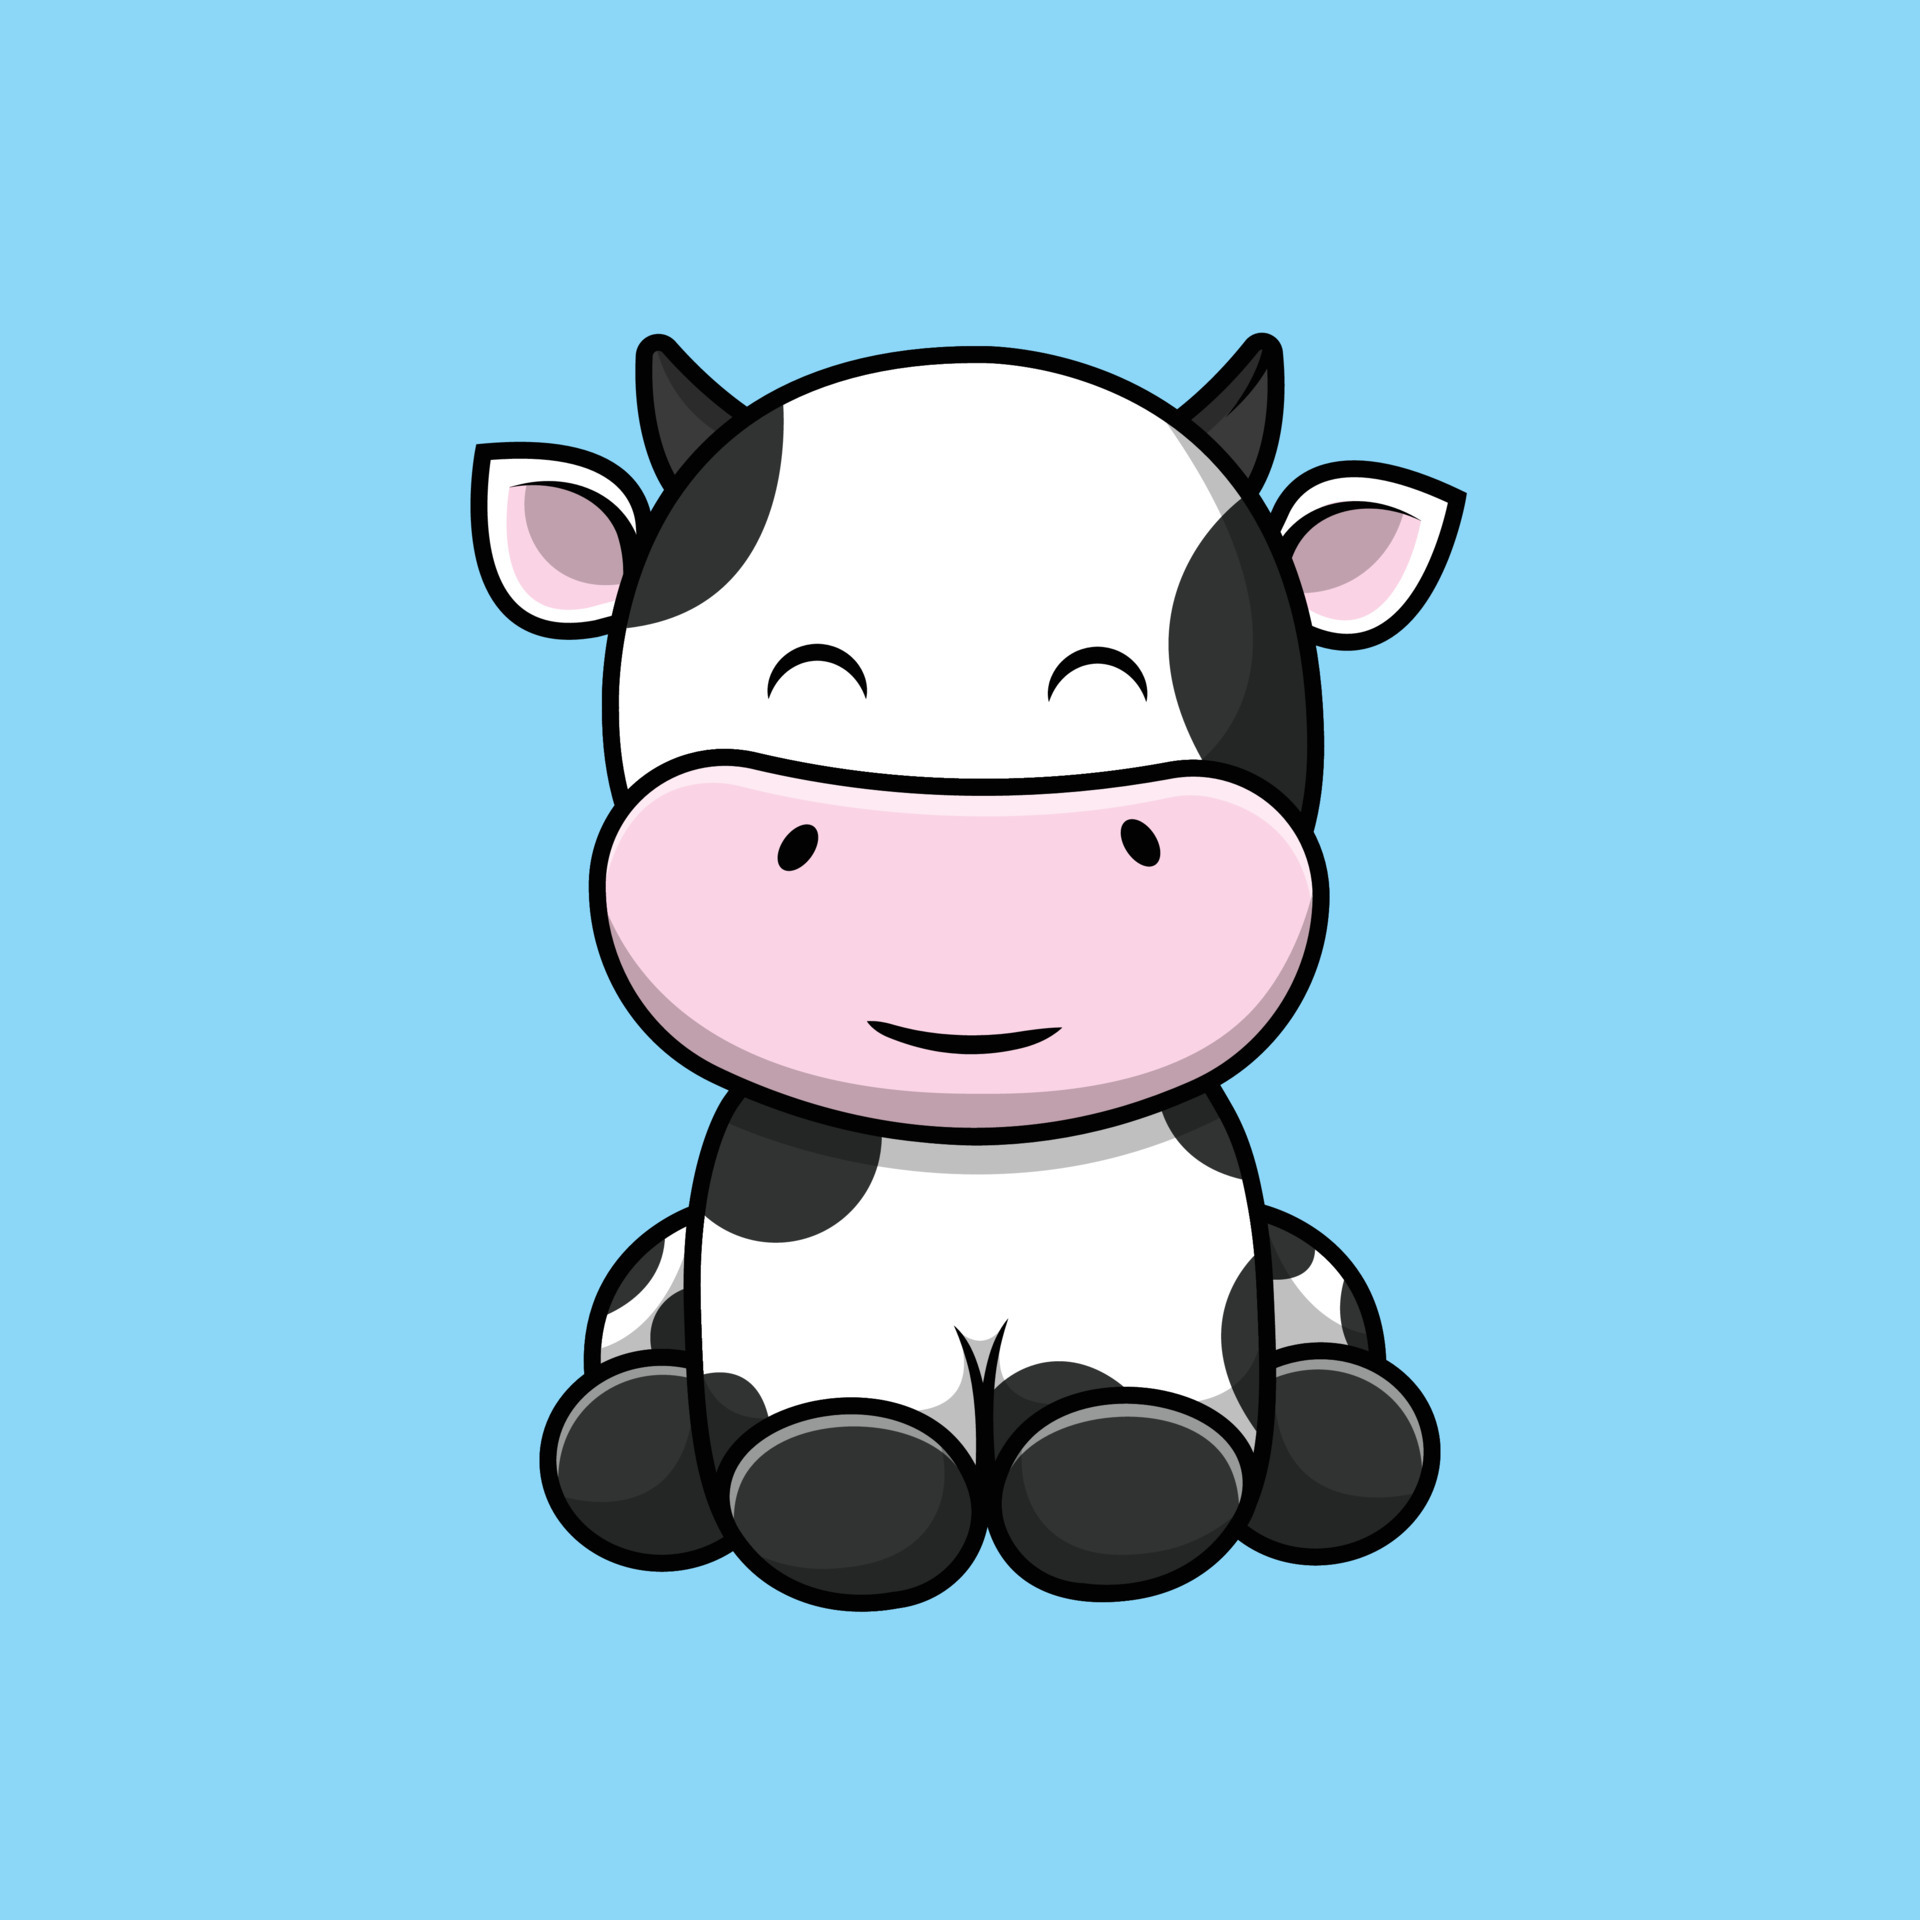 Um desenho animado de uma vaca sentada.